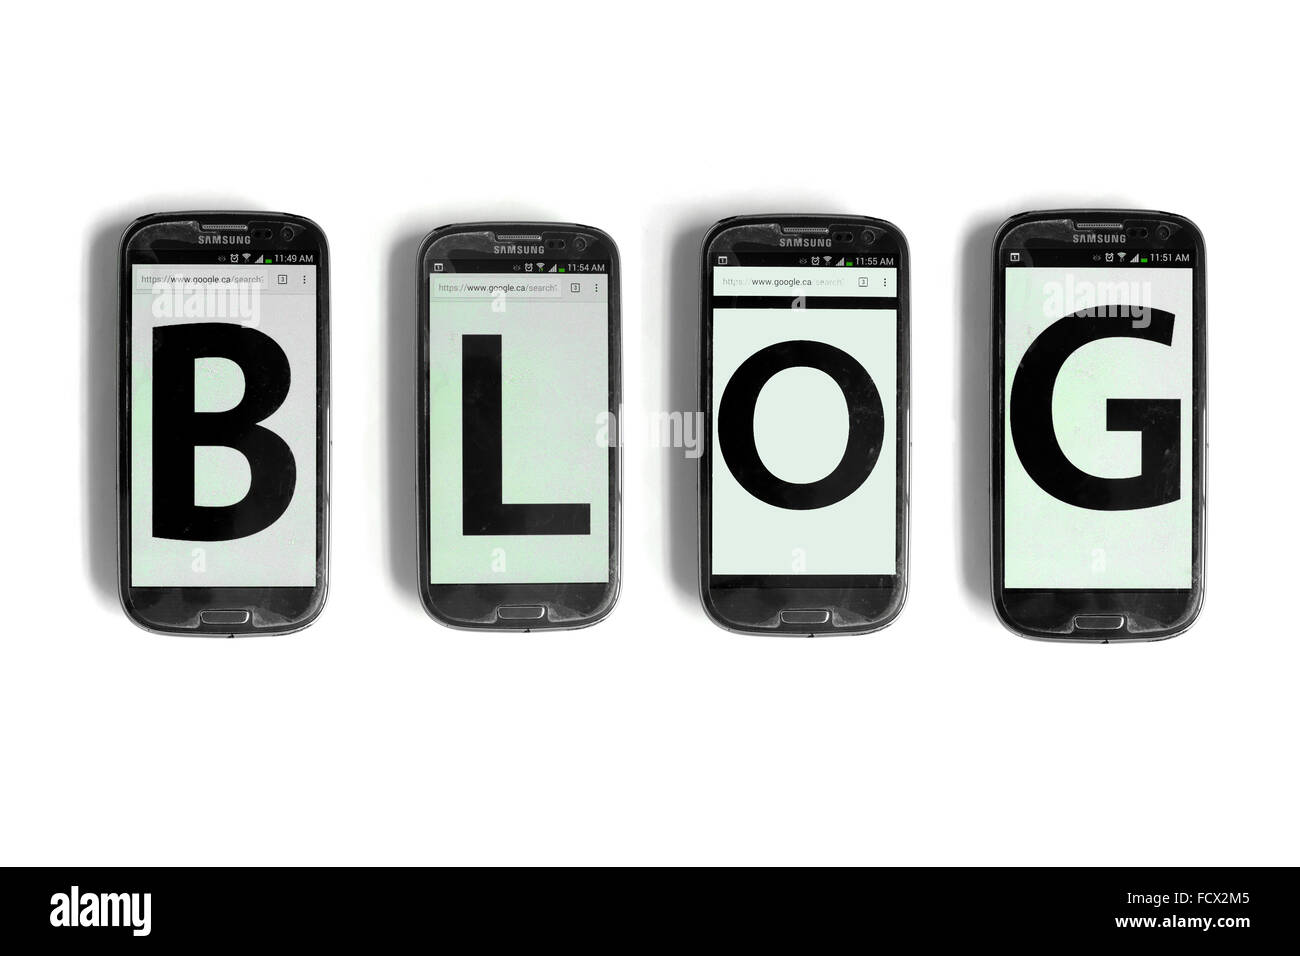 Blog écrit à l'écran des smartphones photographié sur un fond blanc. Banque D'Images